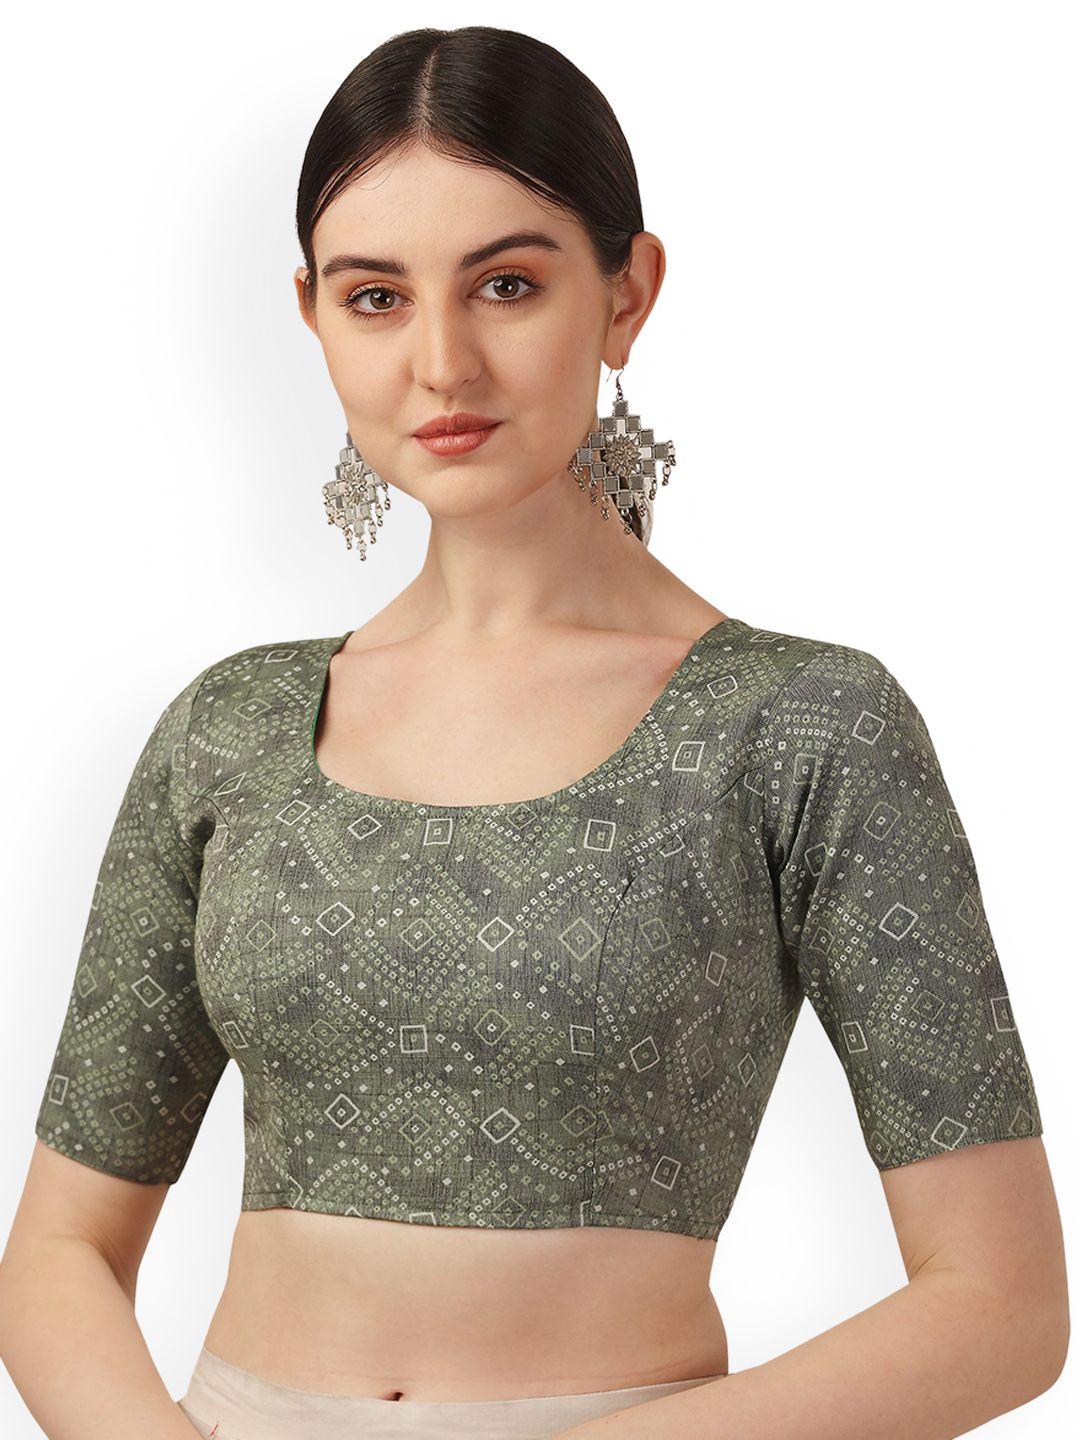 oomph! bandhani printed cotton saree blouse